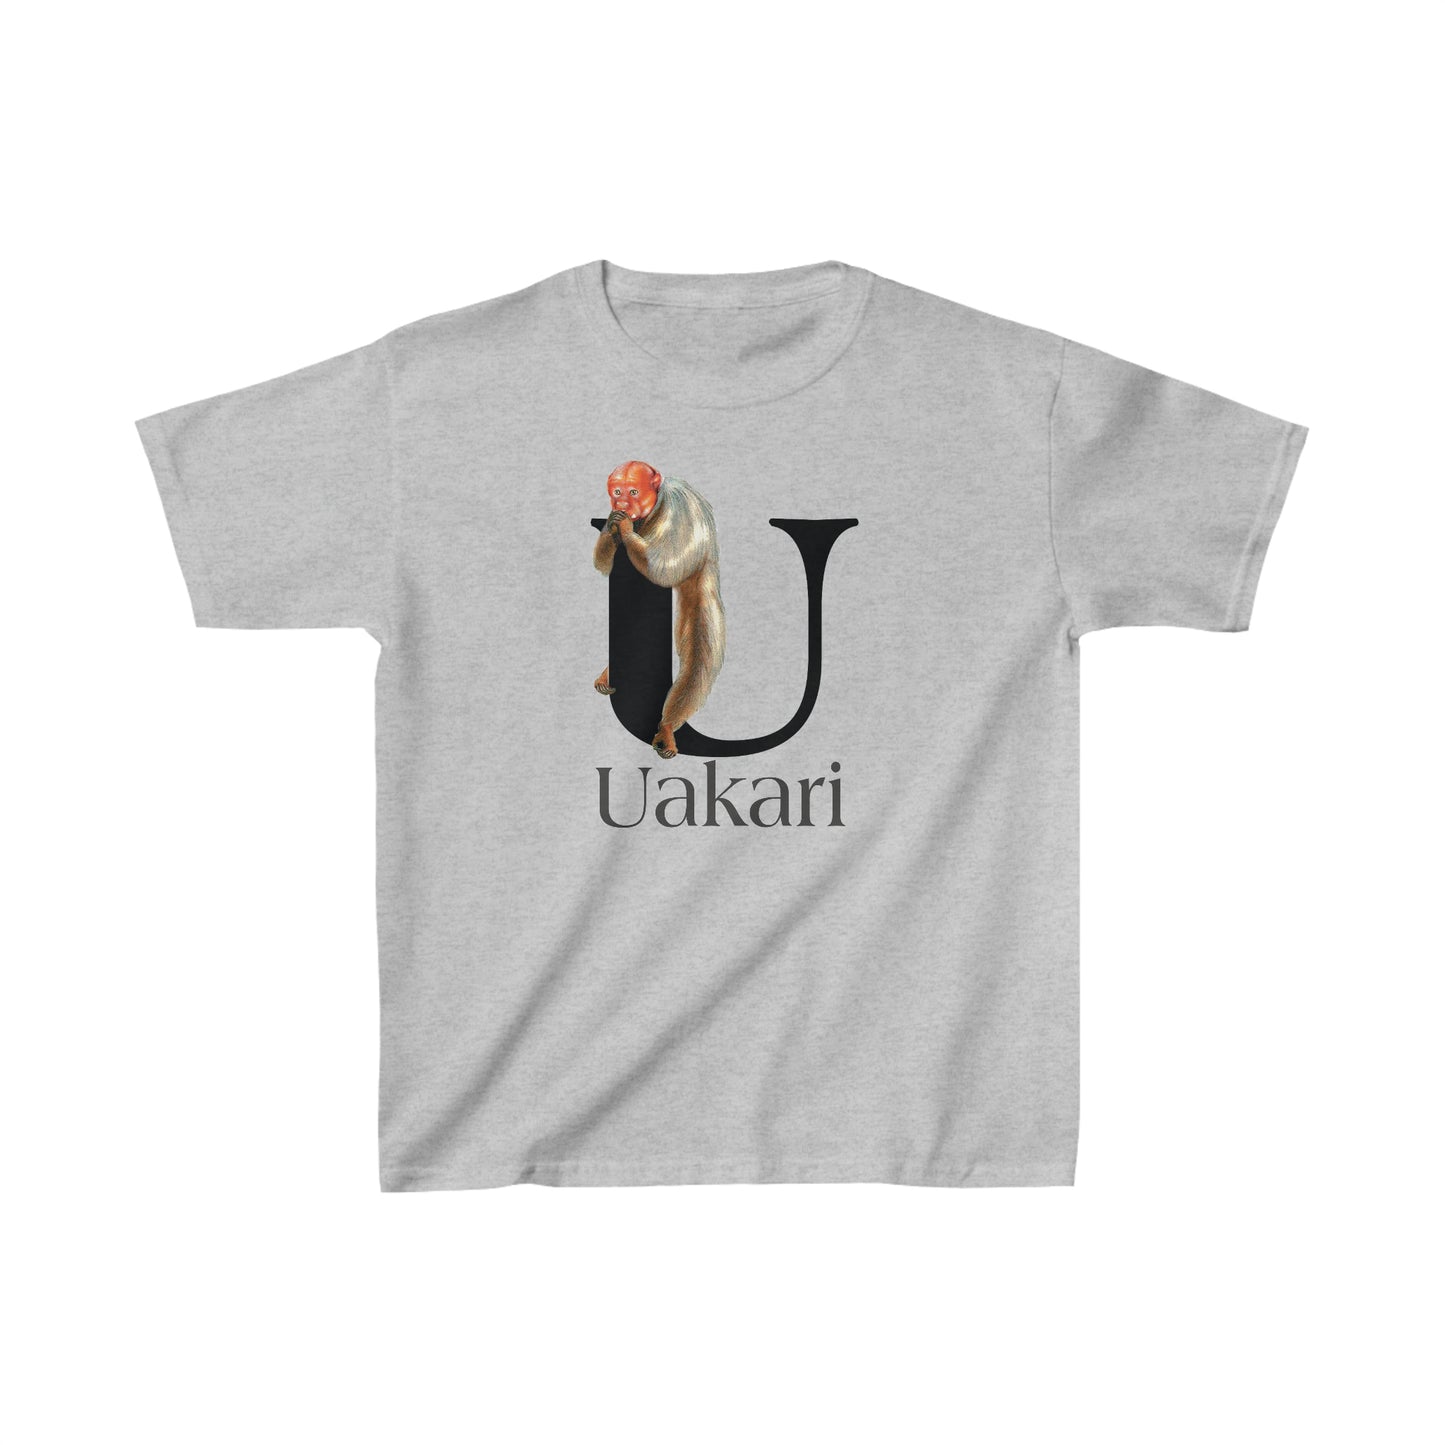 U is for Uakari Monkey, Uacari monkey Drawing, Uakari T-Shirt, animal t-shirt, animal alphabet letter U, Uakari illustration t shirt,